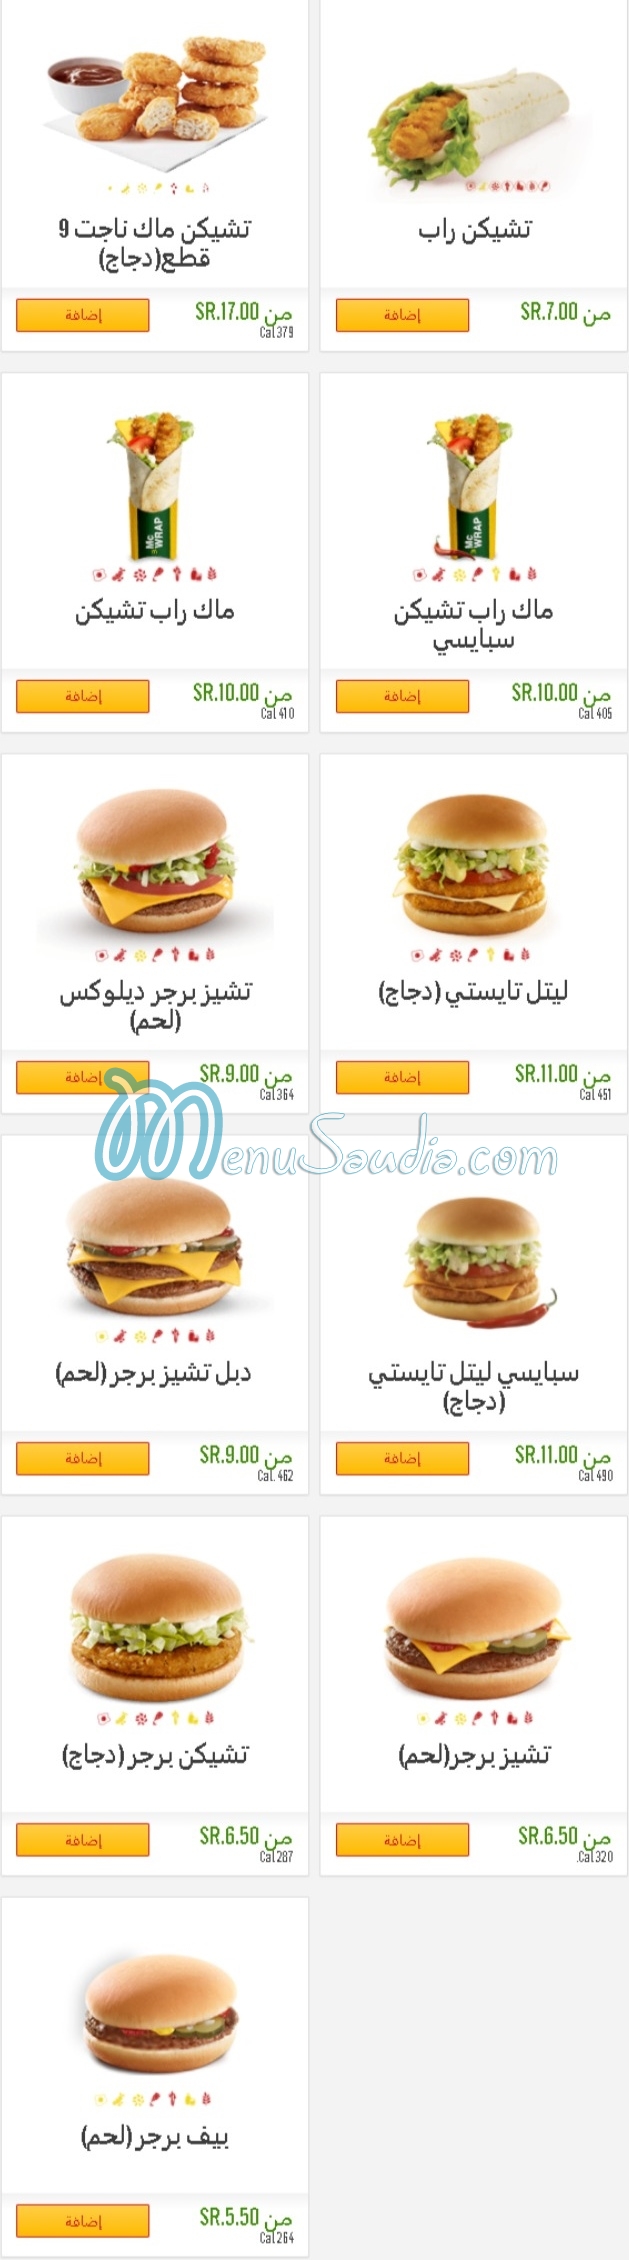 Mcdonalds menu KSA 